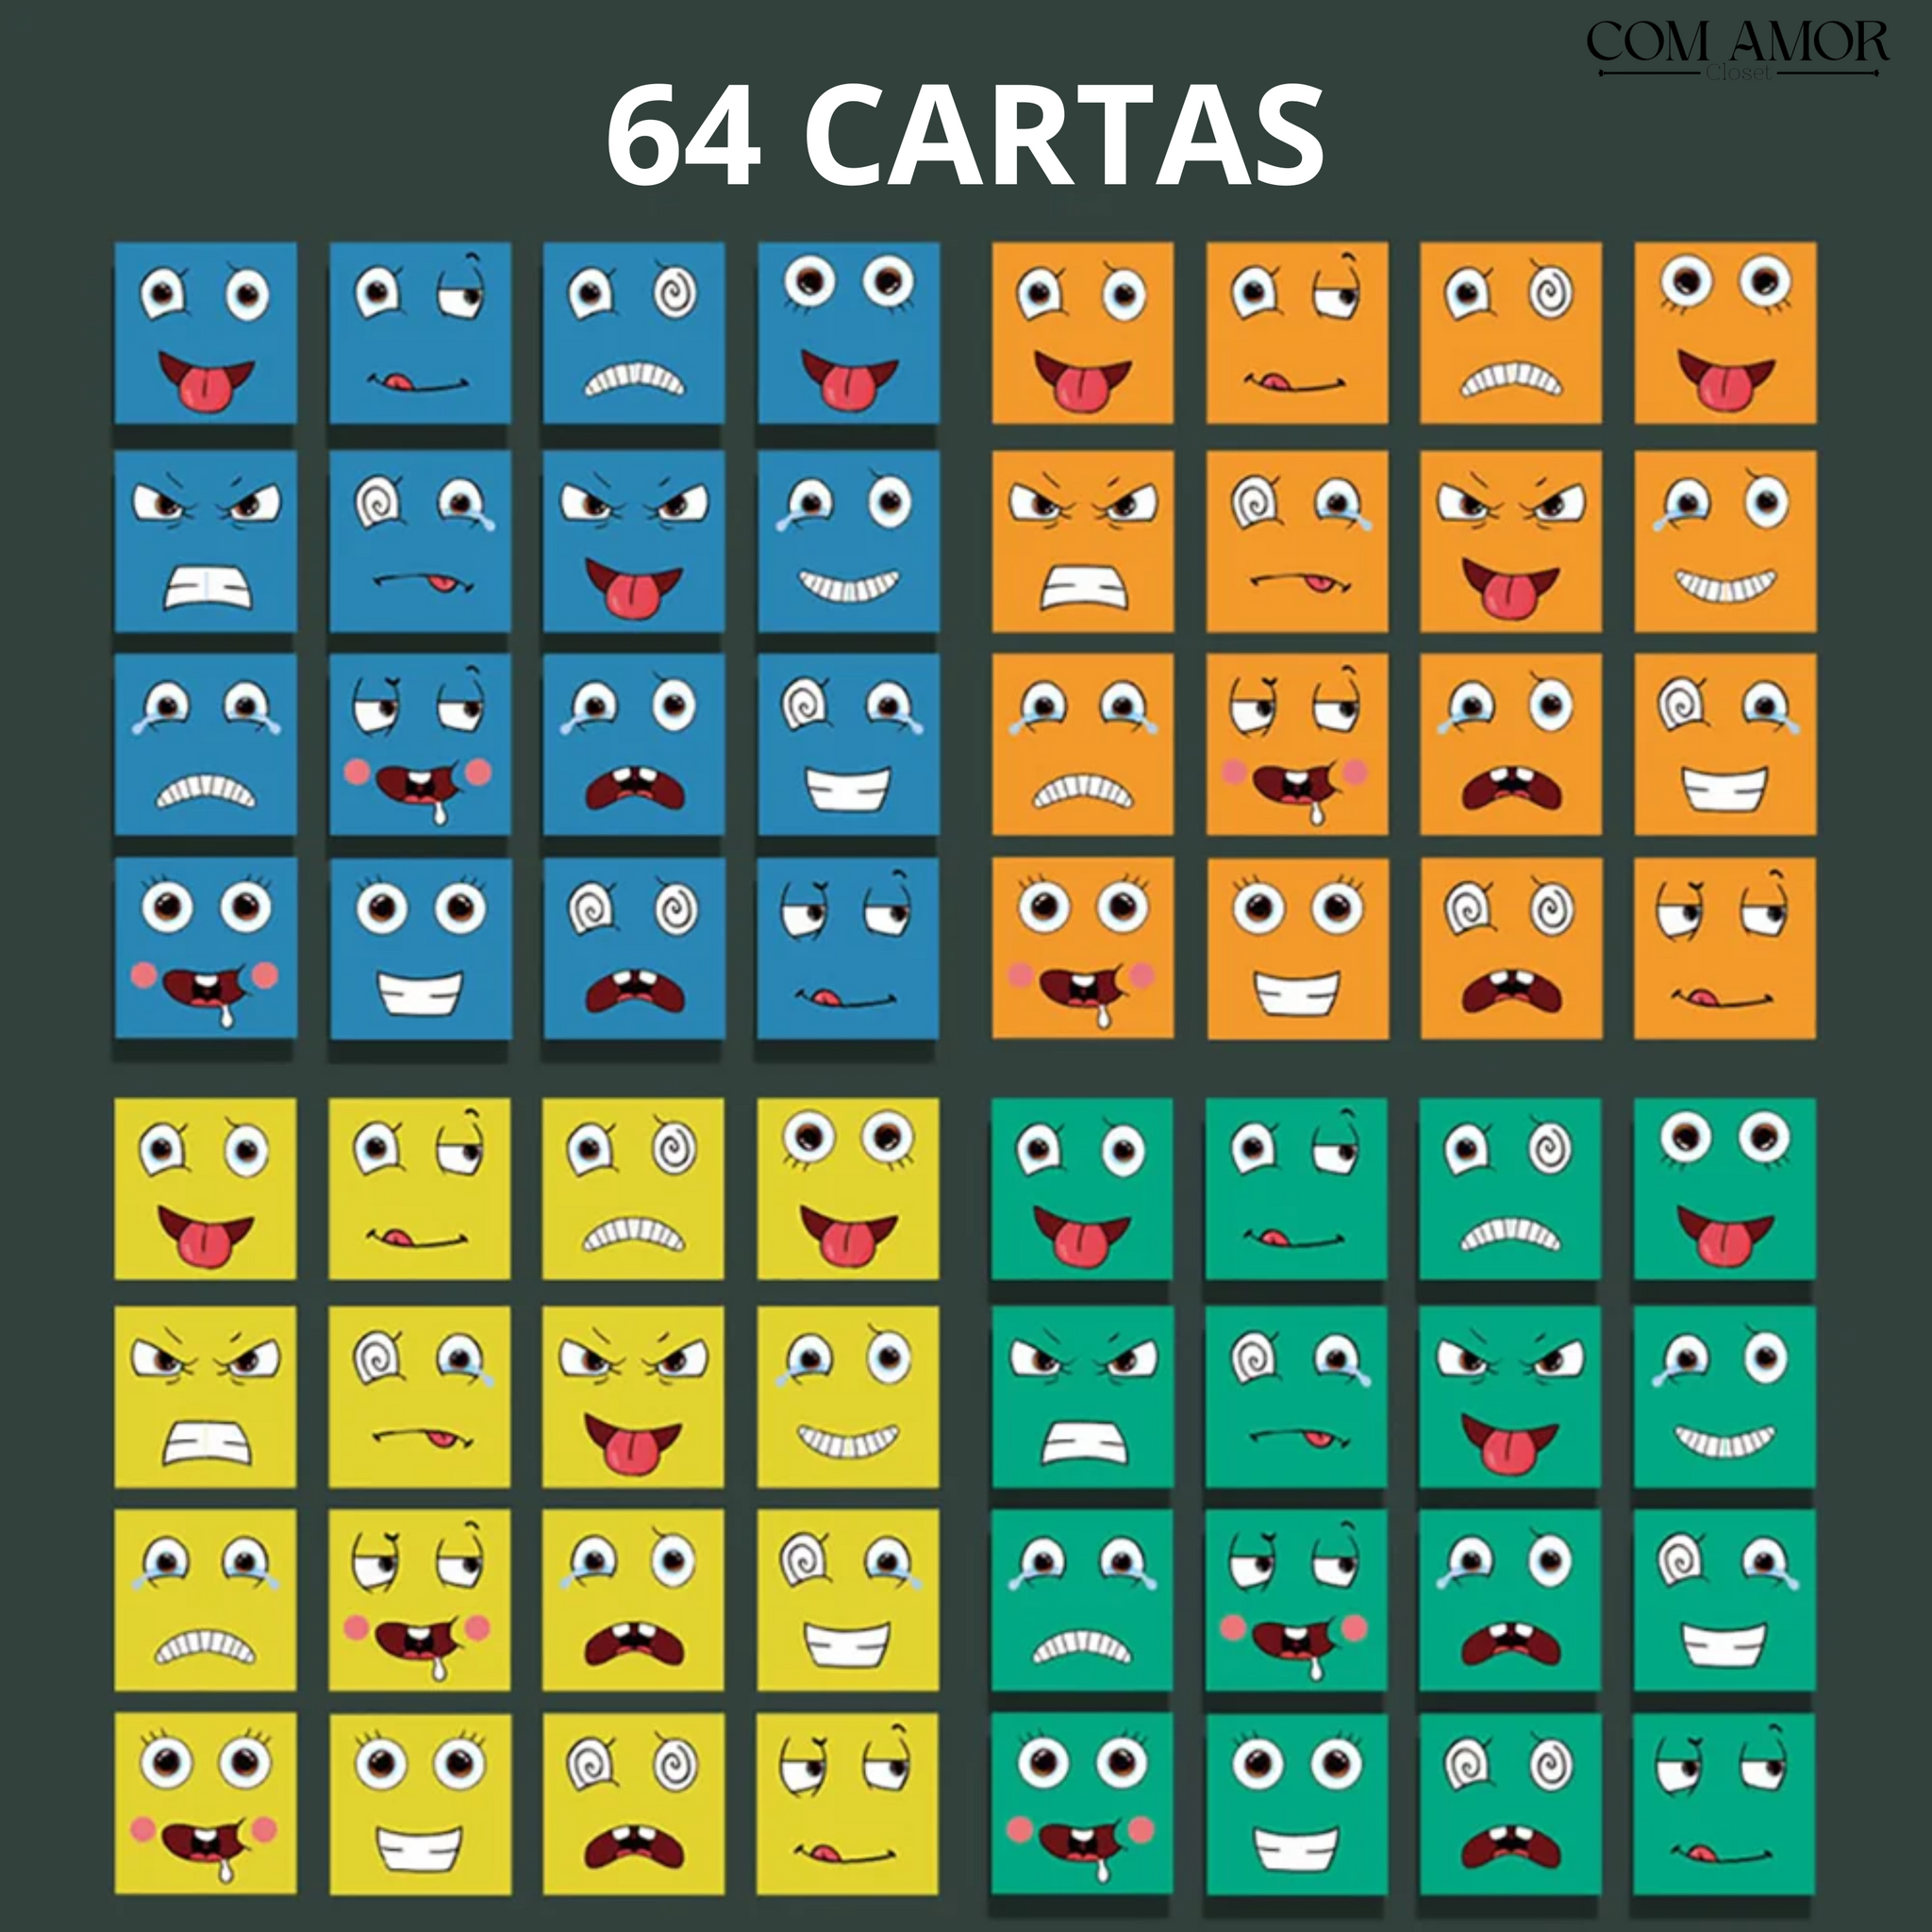 Jogos de Emoji, joga online gratuitamente em 1001Jogos.